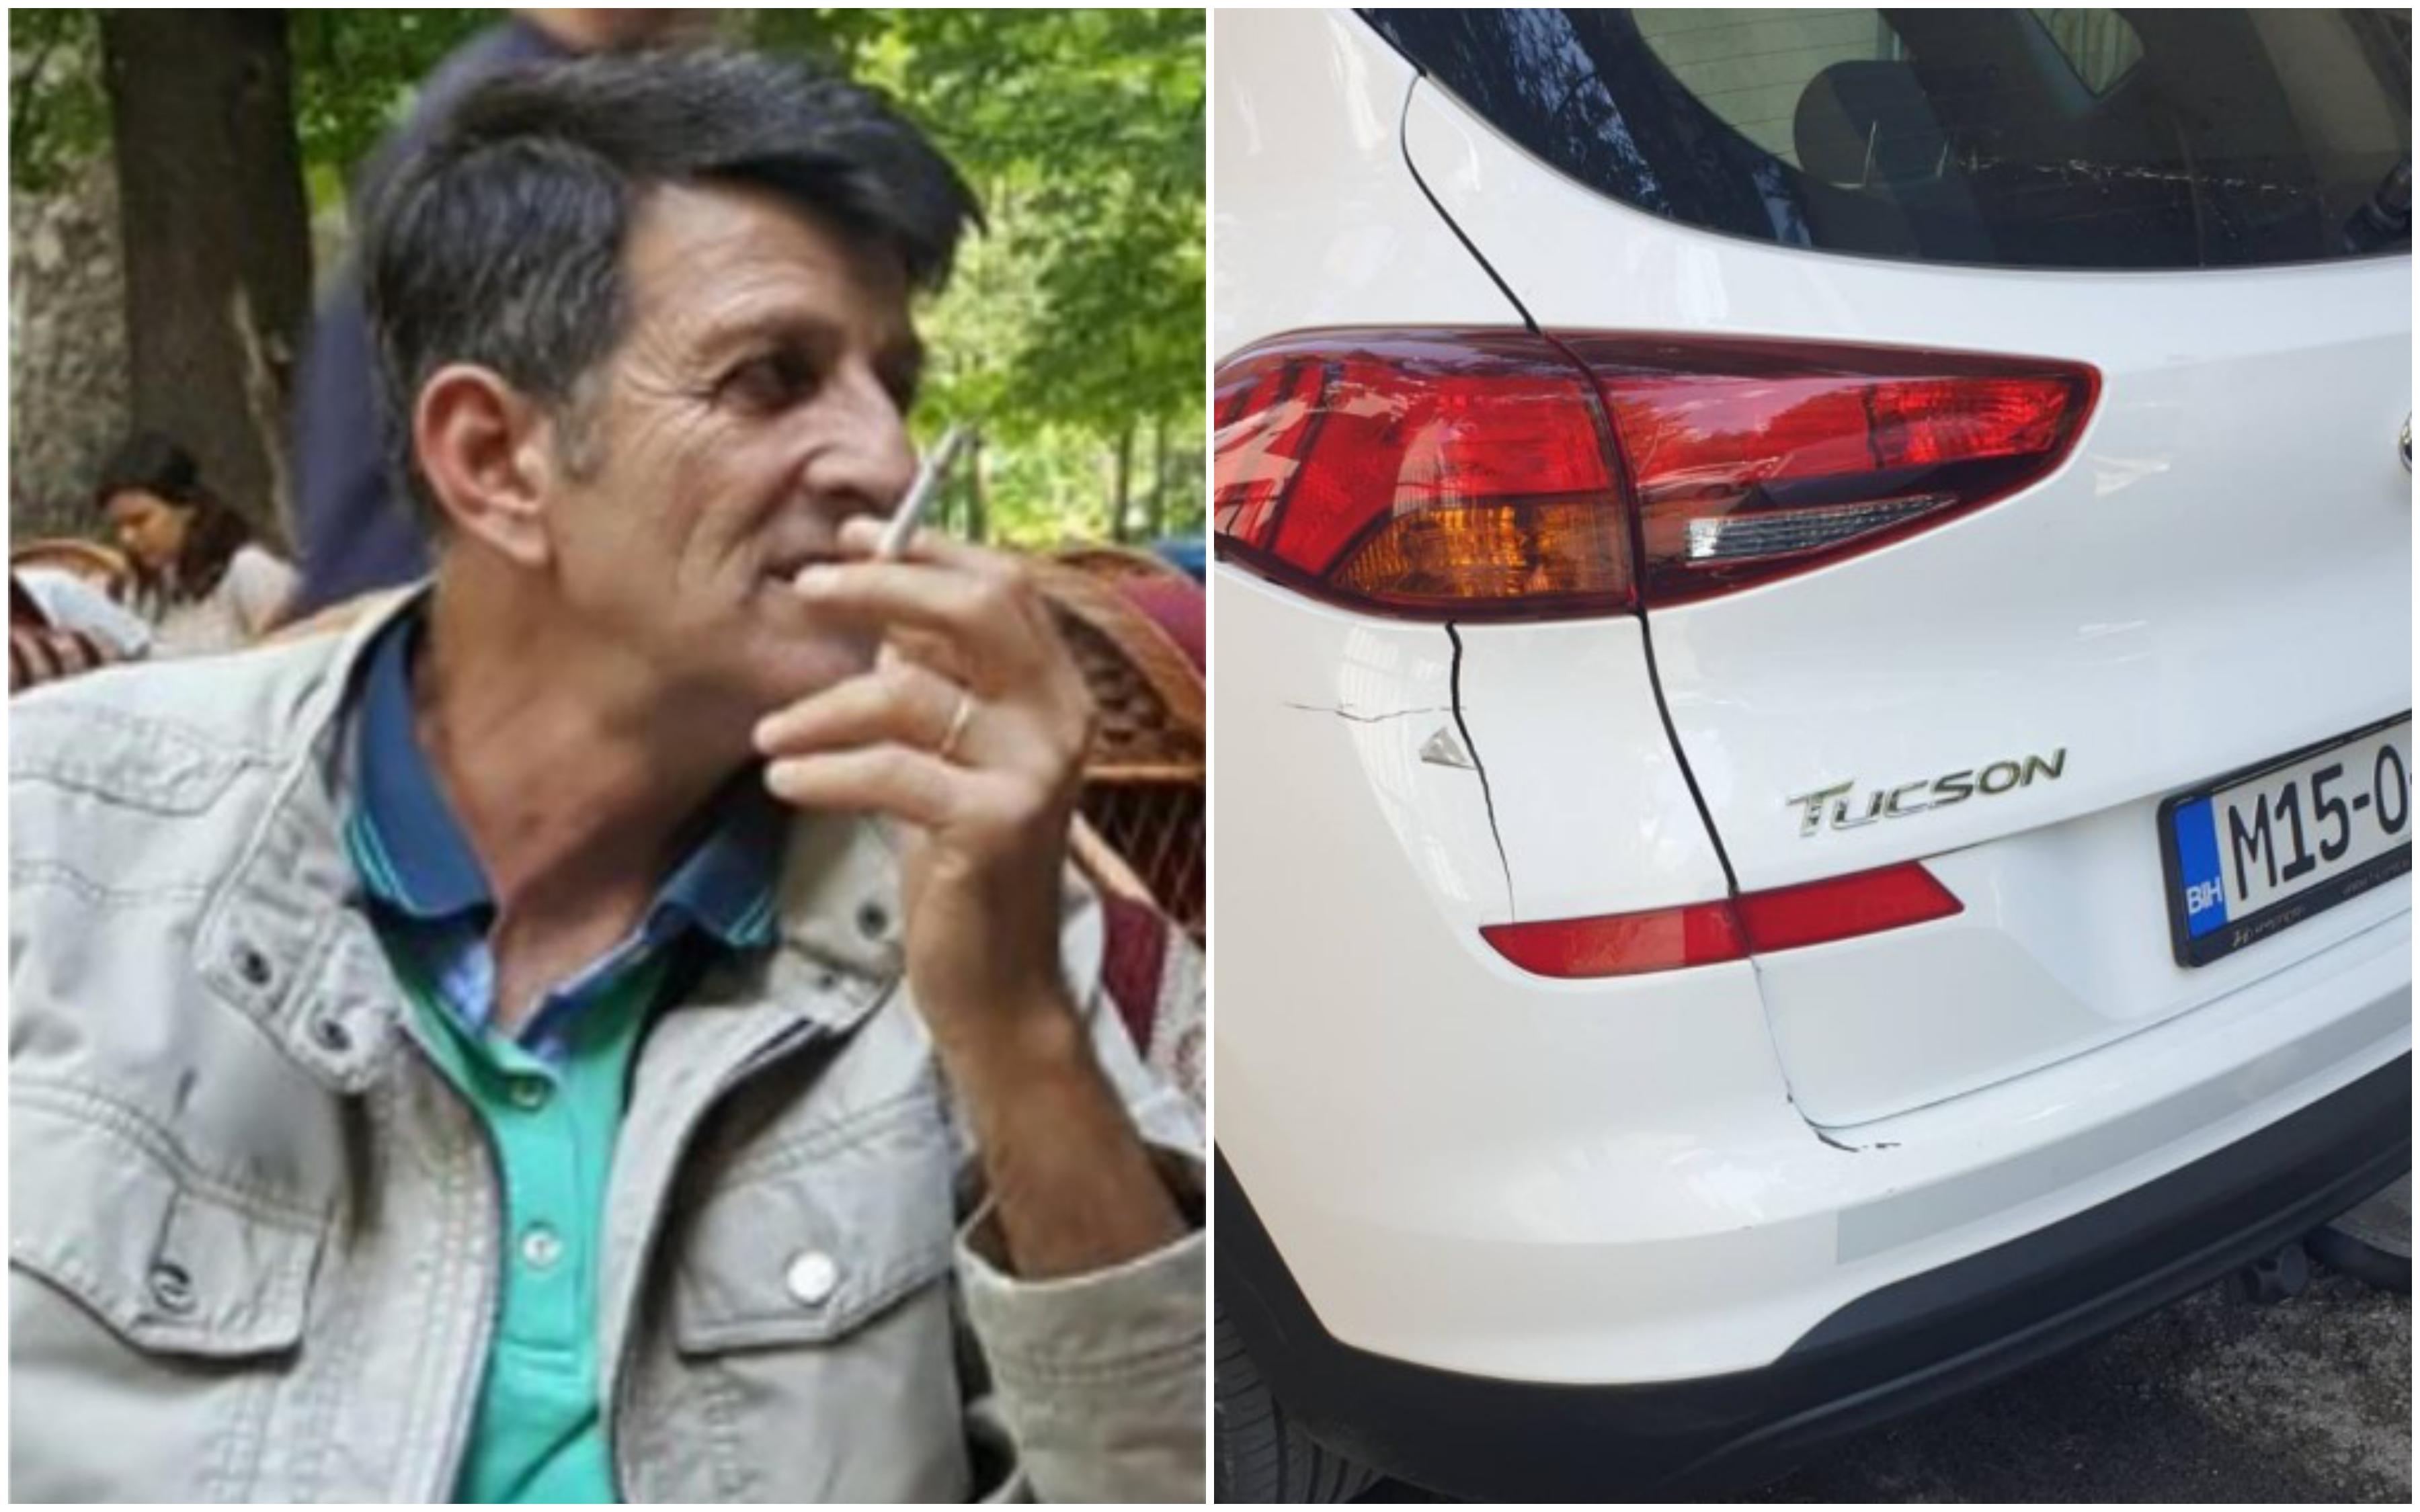 Skandalozno: Uposlenici FUCZ-a mole novinare "Avaza" da na spikerfon kažu kako nam oni nisu ustupili fotografiju oštećenog vozila